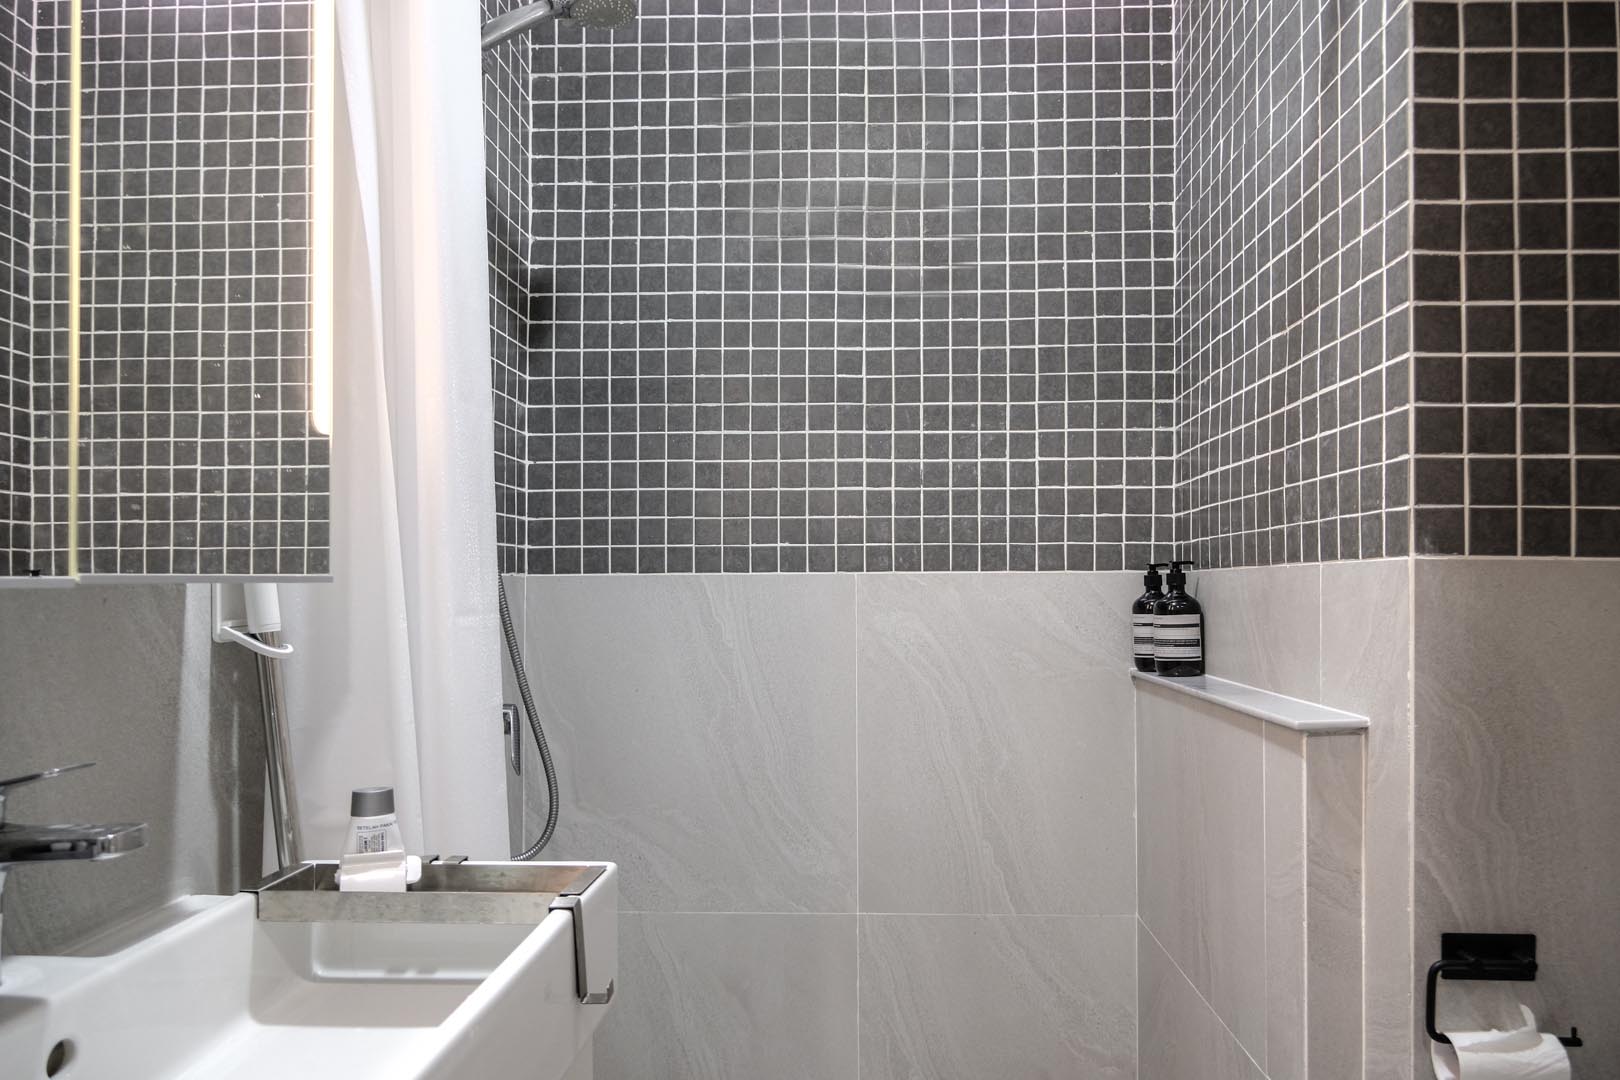 В этой маленькой ванной комнате большая плитка покрывает нижнюю половину стен, а верхняя половина покрыта квадратной серой плиткой.